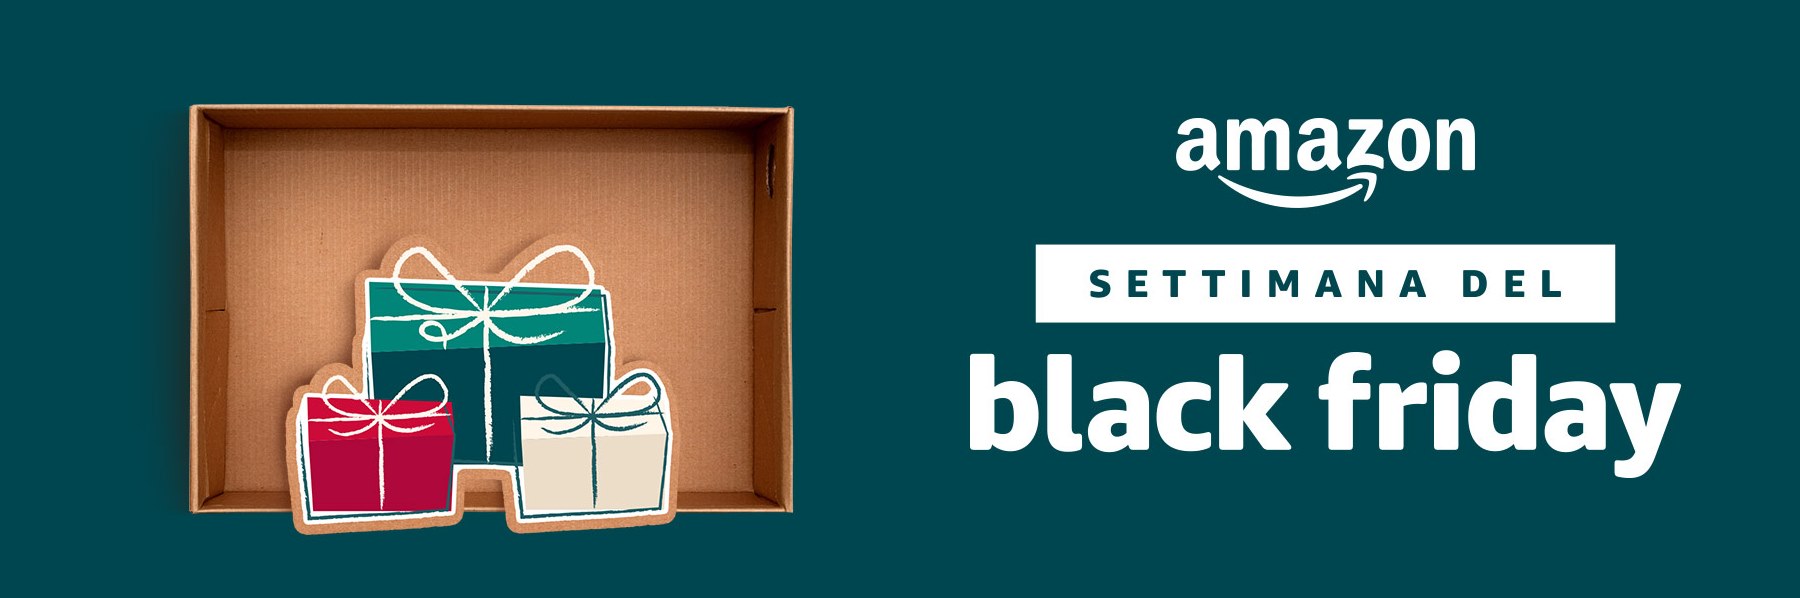 Black Friday 2017 Amazon: le offerte di design del 24 novembre da non perdere